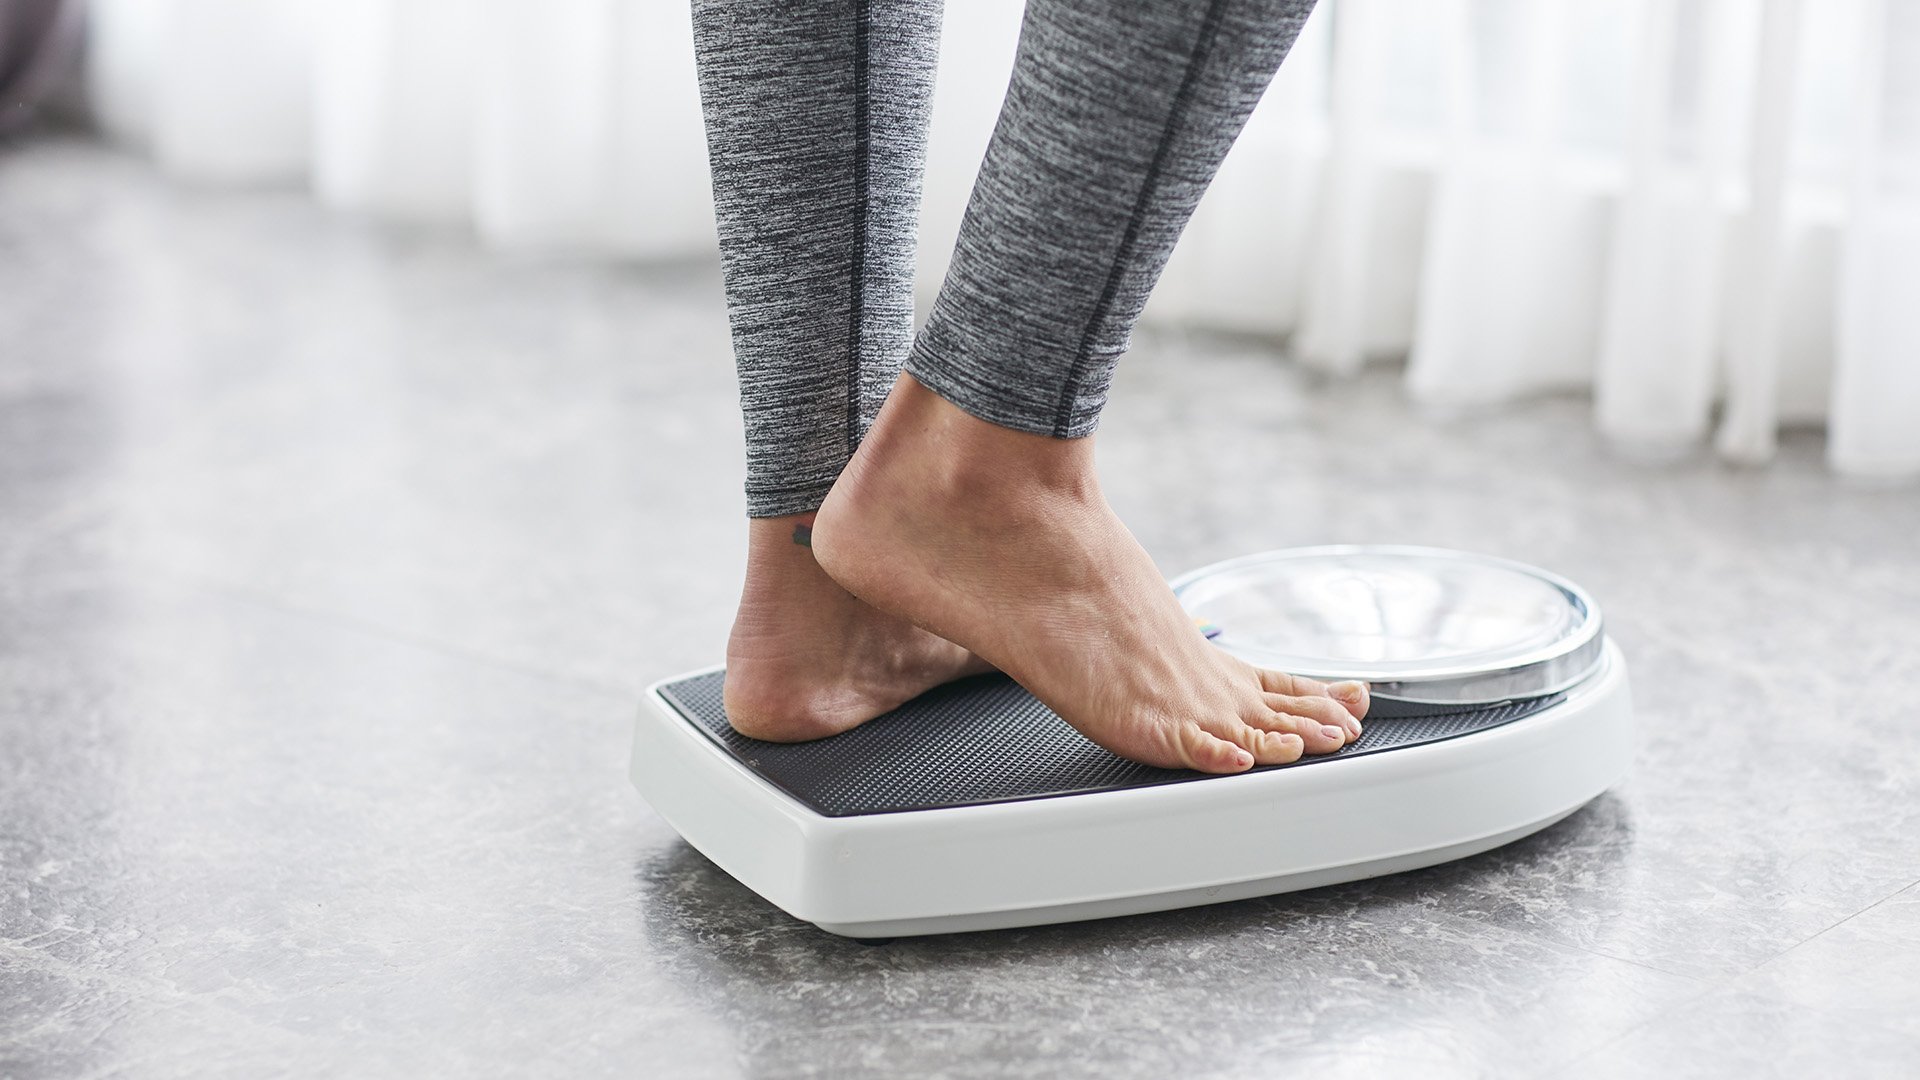 Как набрать вес: быстро и безопасно для здоровья - советы диетолога